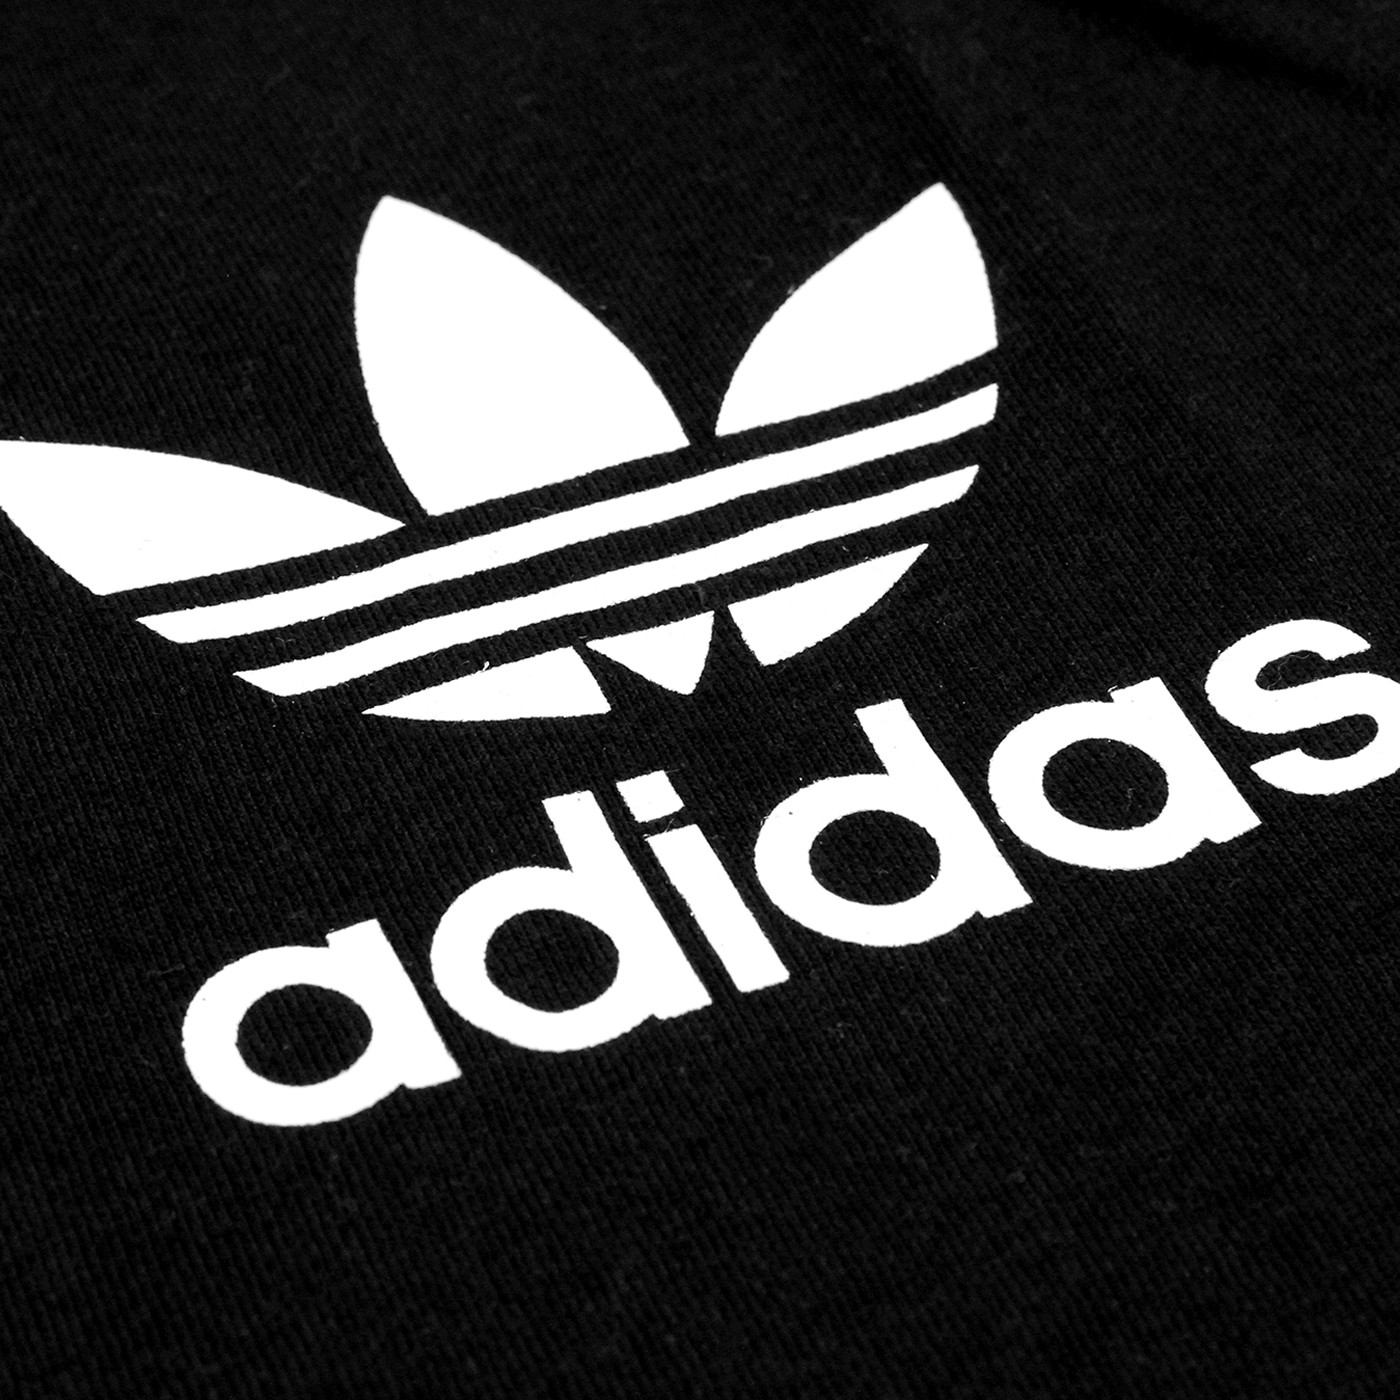 Адидас сайт казахстан. Adidas логотип. Трафарет адидас. Новый логотип адидас. Старая эмблема адидас.